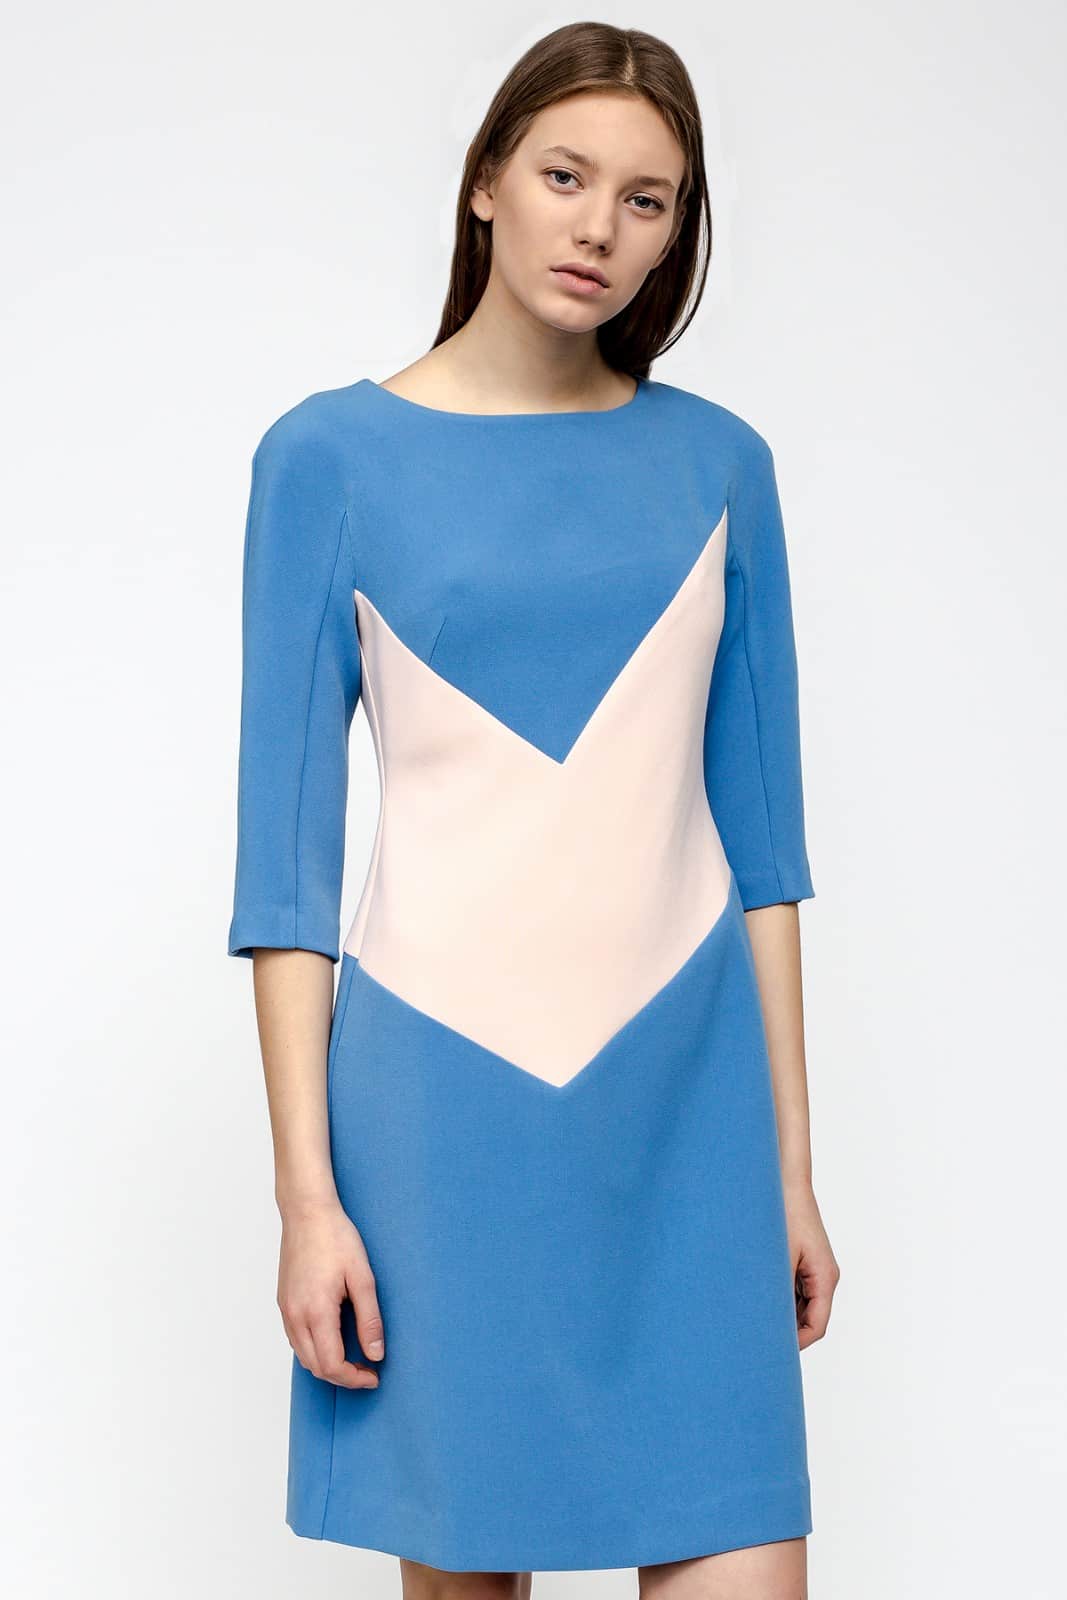 Платье с геометрической вставкой - Must Have гардероба